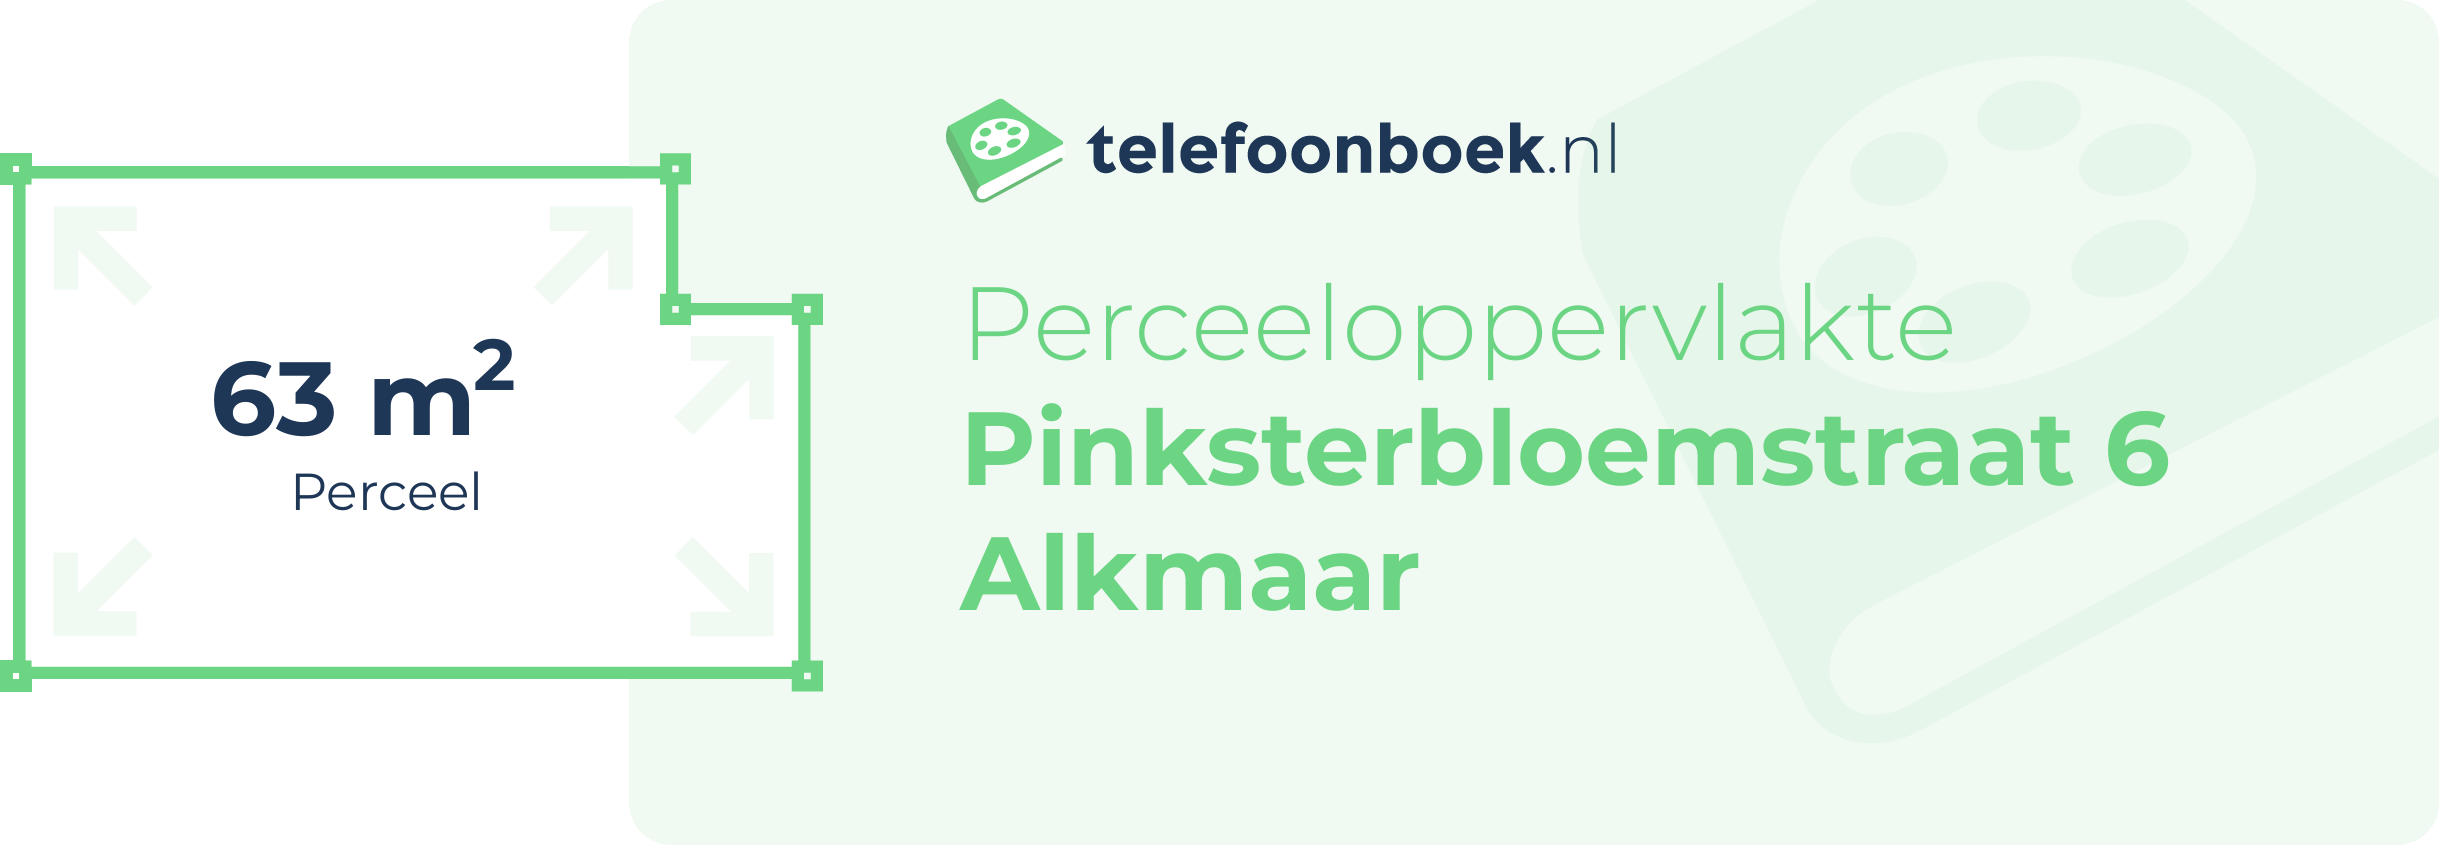 Perceeloppervlakte Pinksterbloemstraat 6 Alkmaar